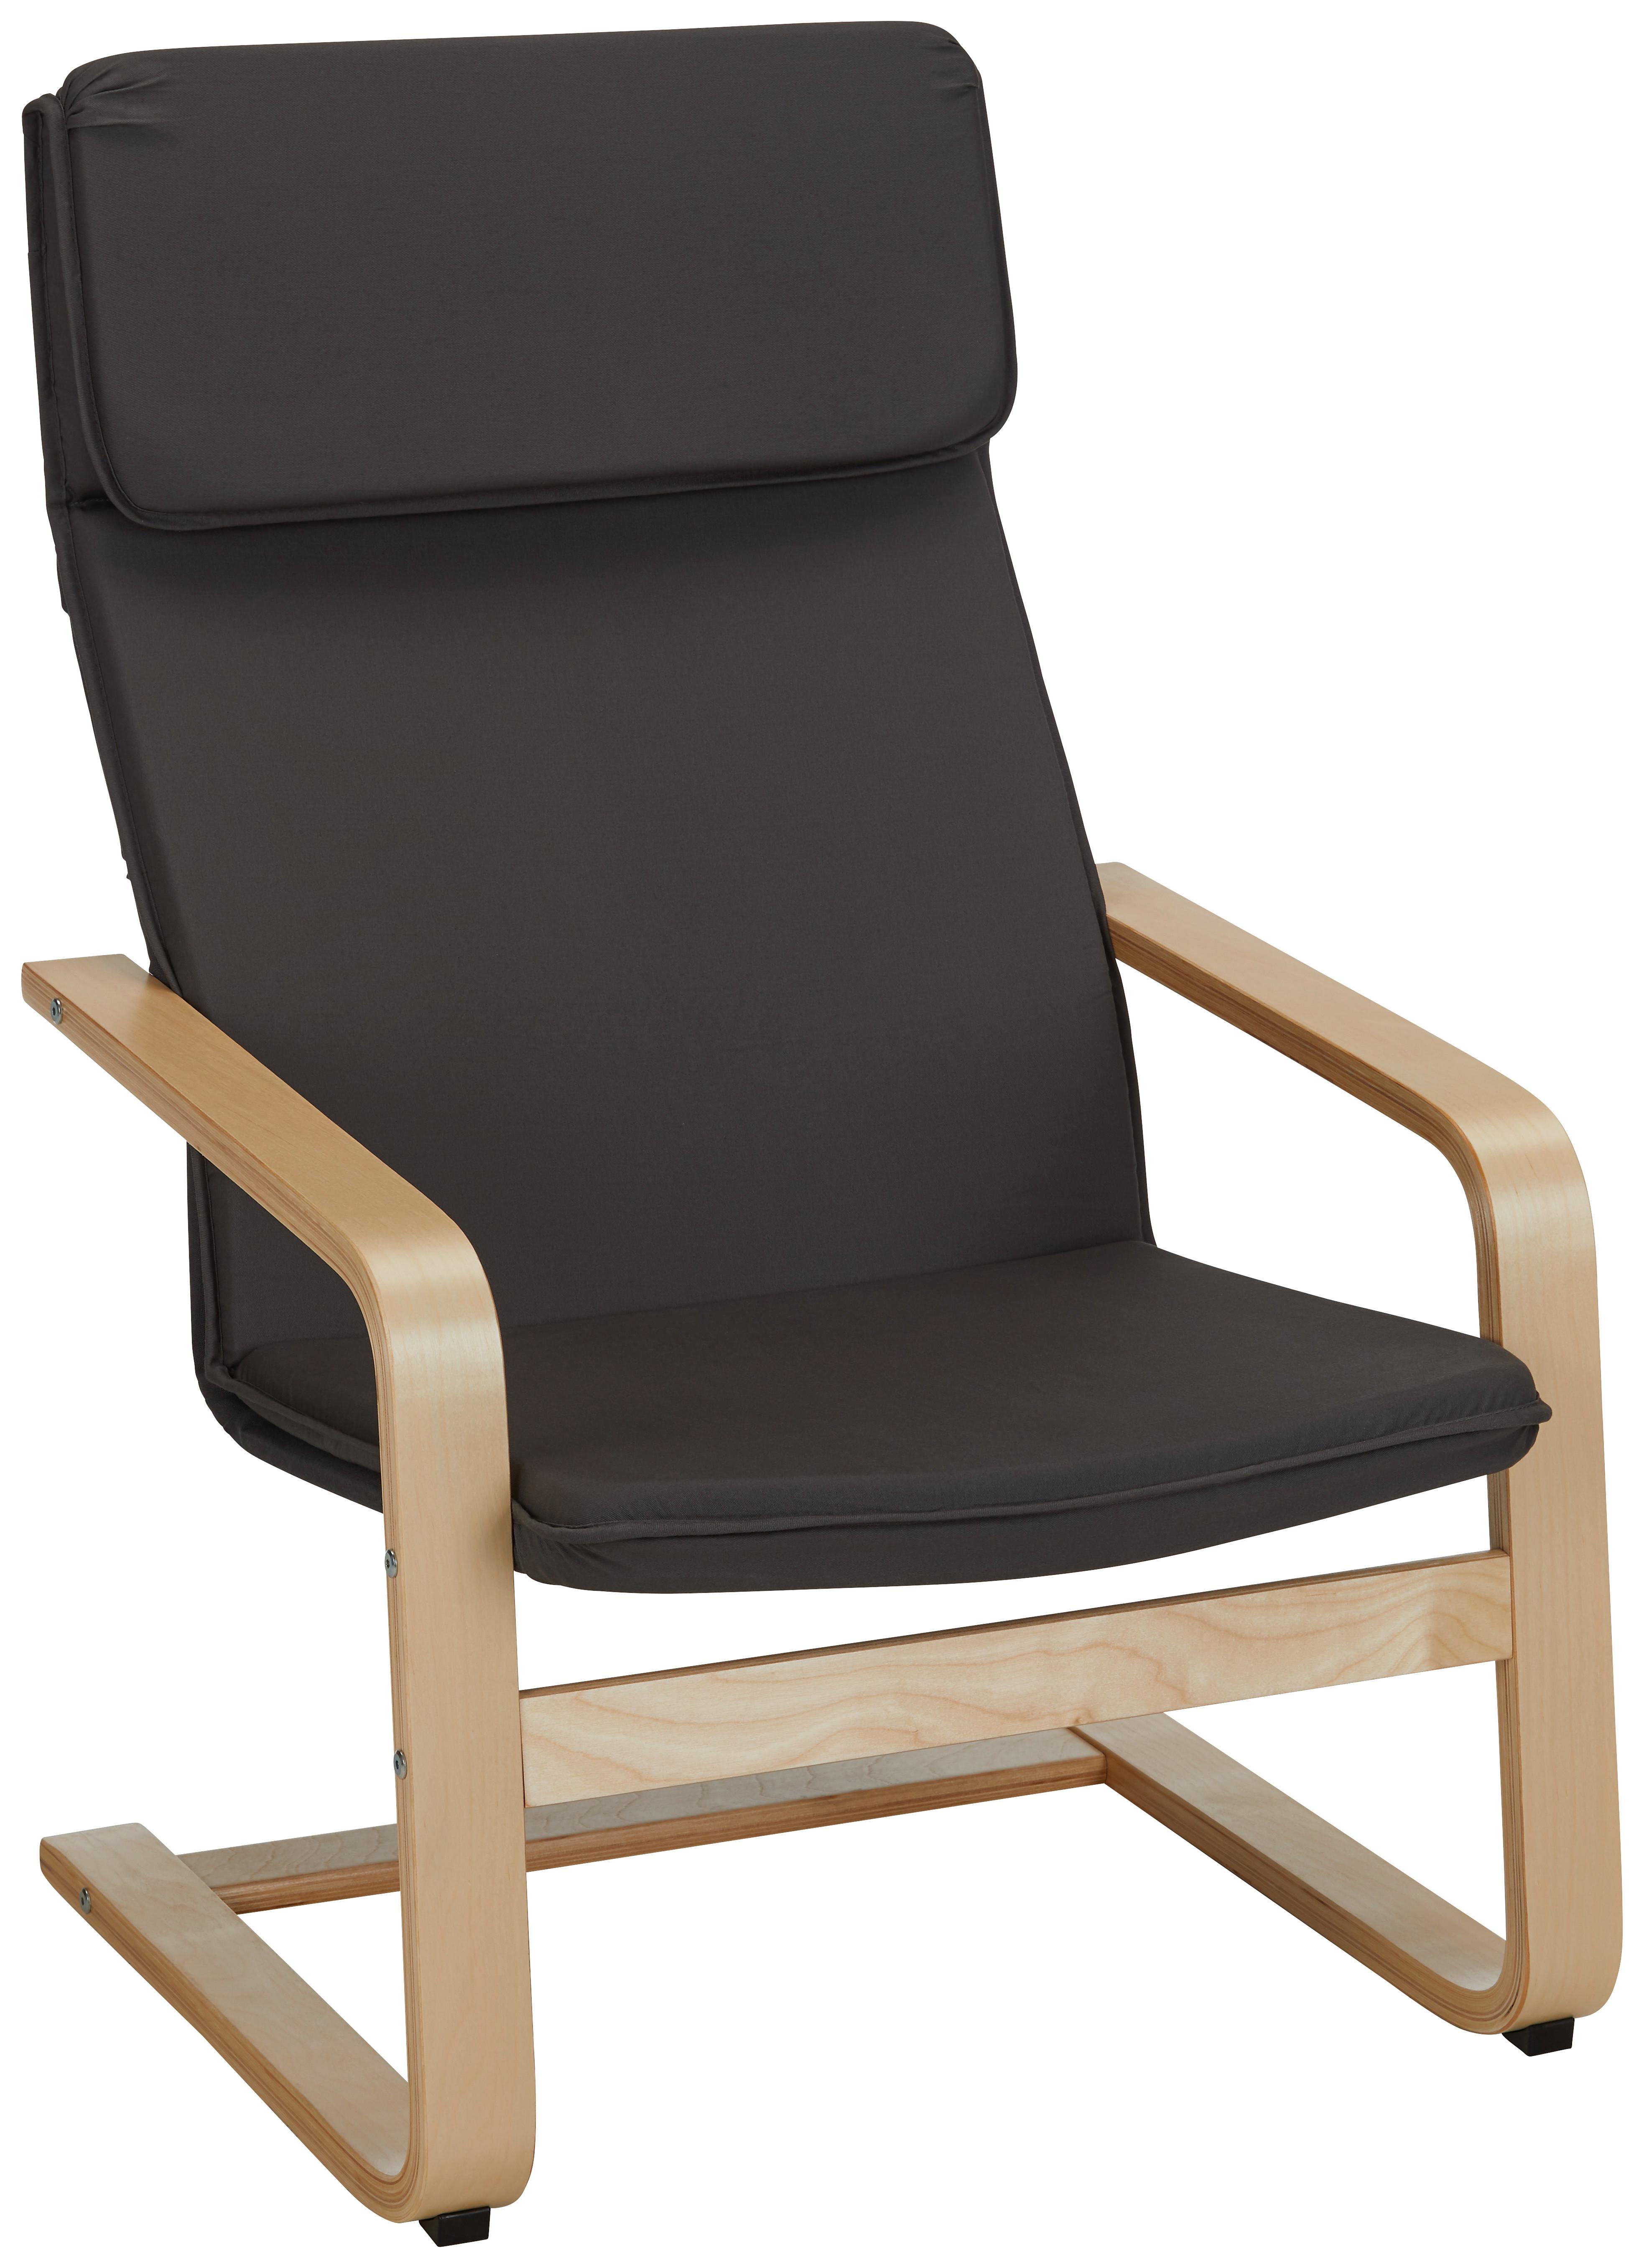 Houpací Židle Manu - šedá/přírodní barvy, Moderní, dřevo/textil (67/98/78cm)